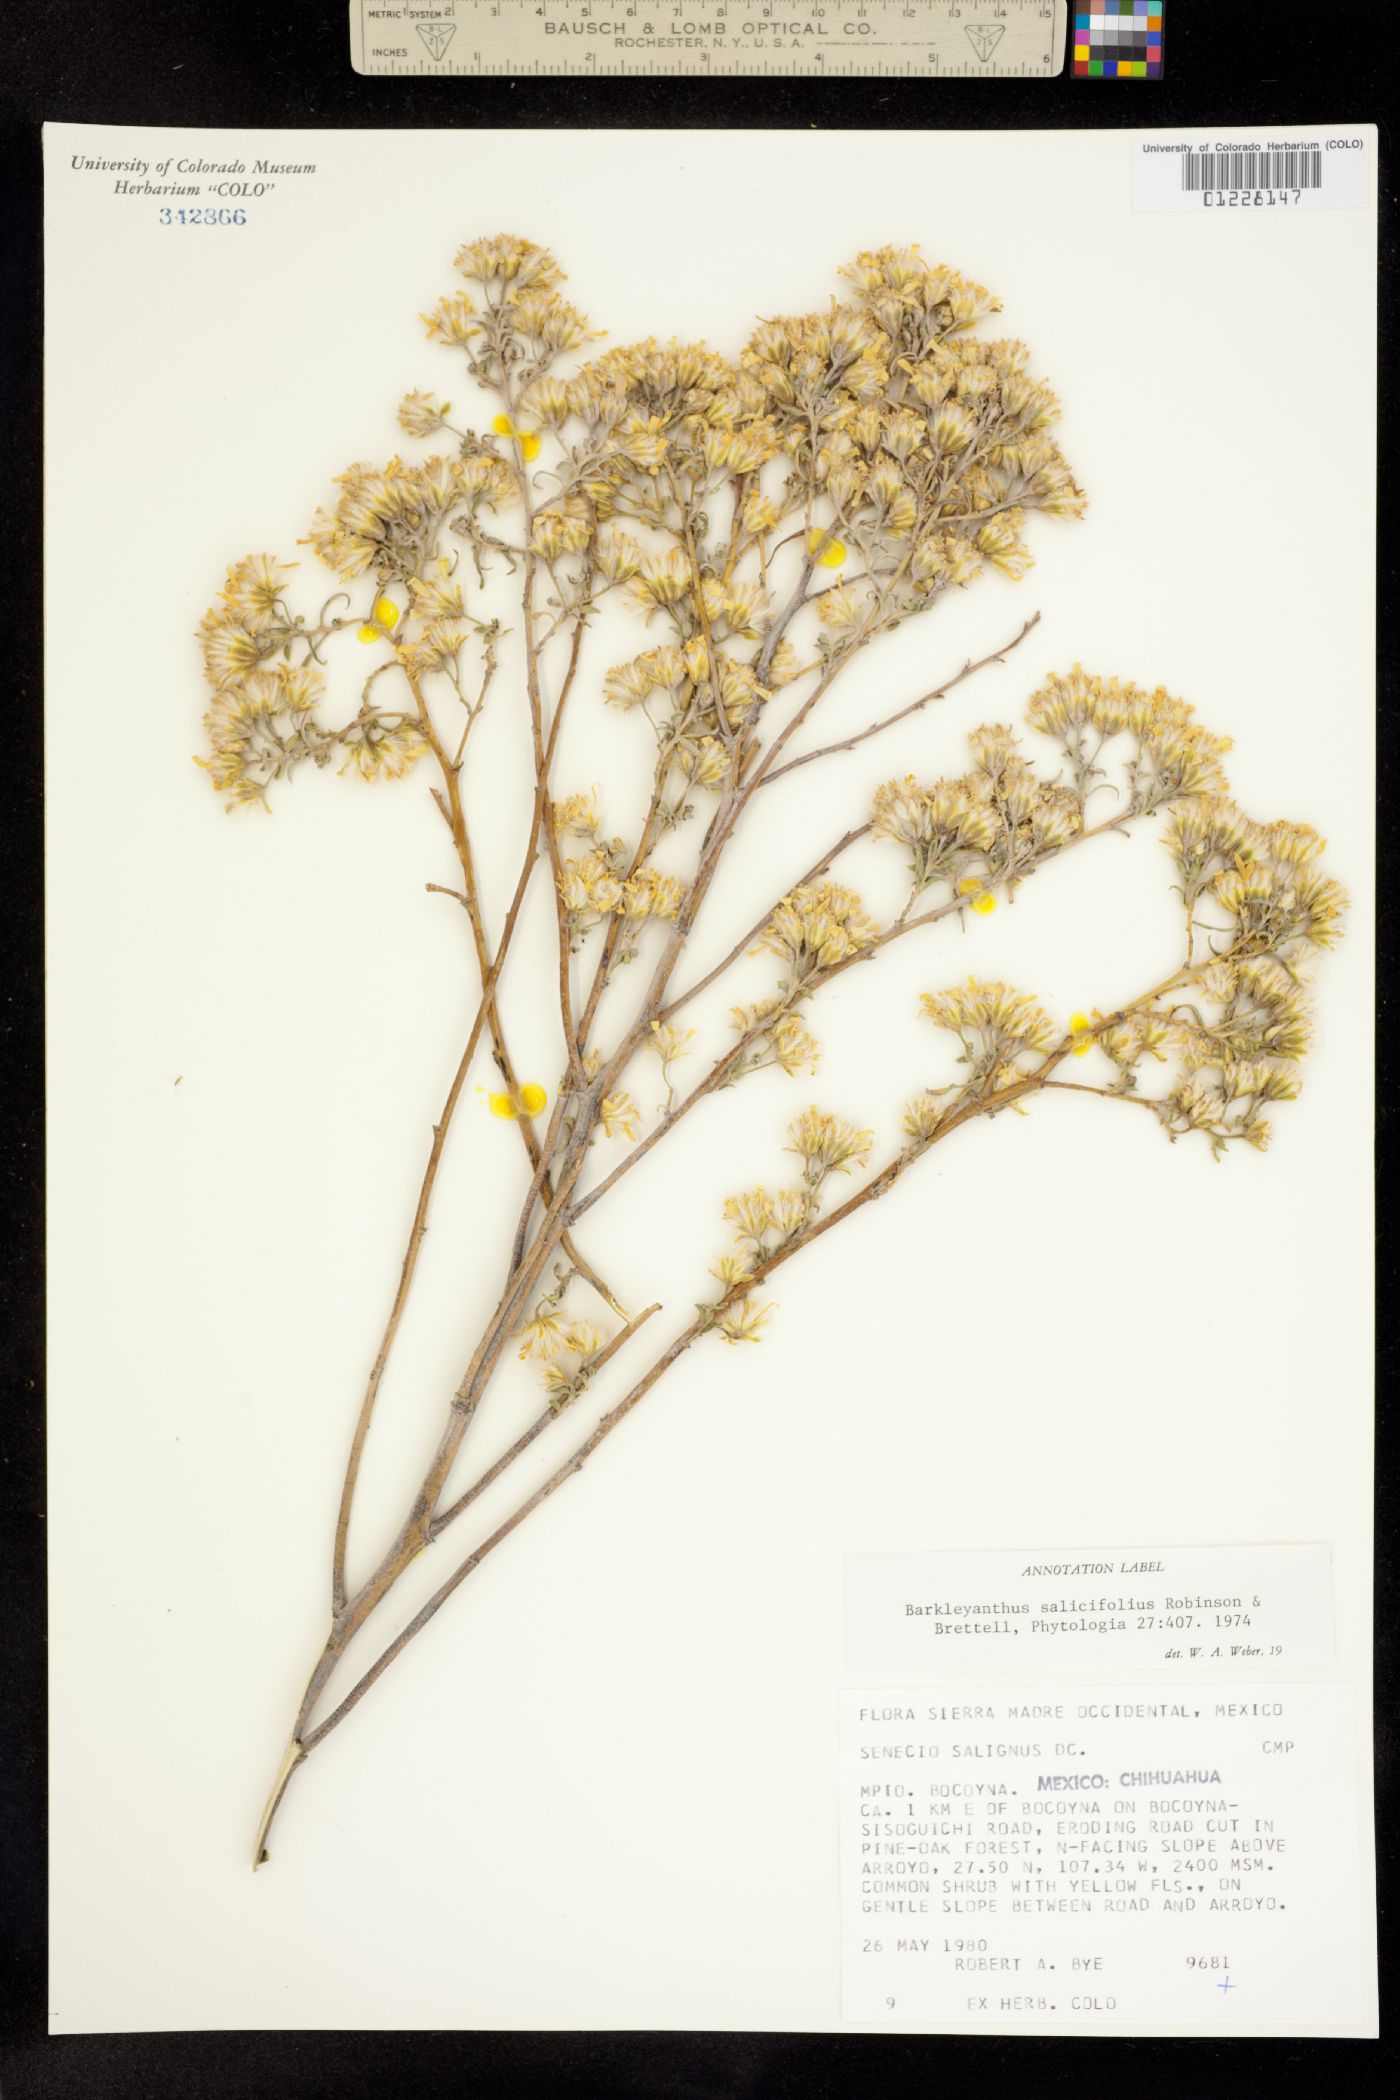 Barkleyanthus image